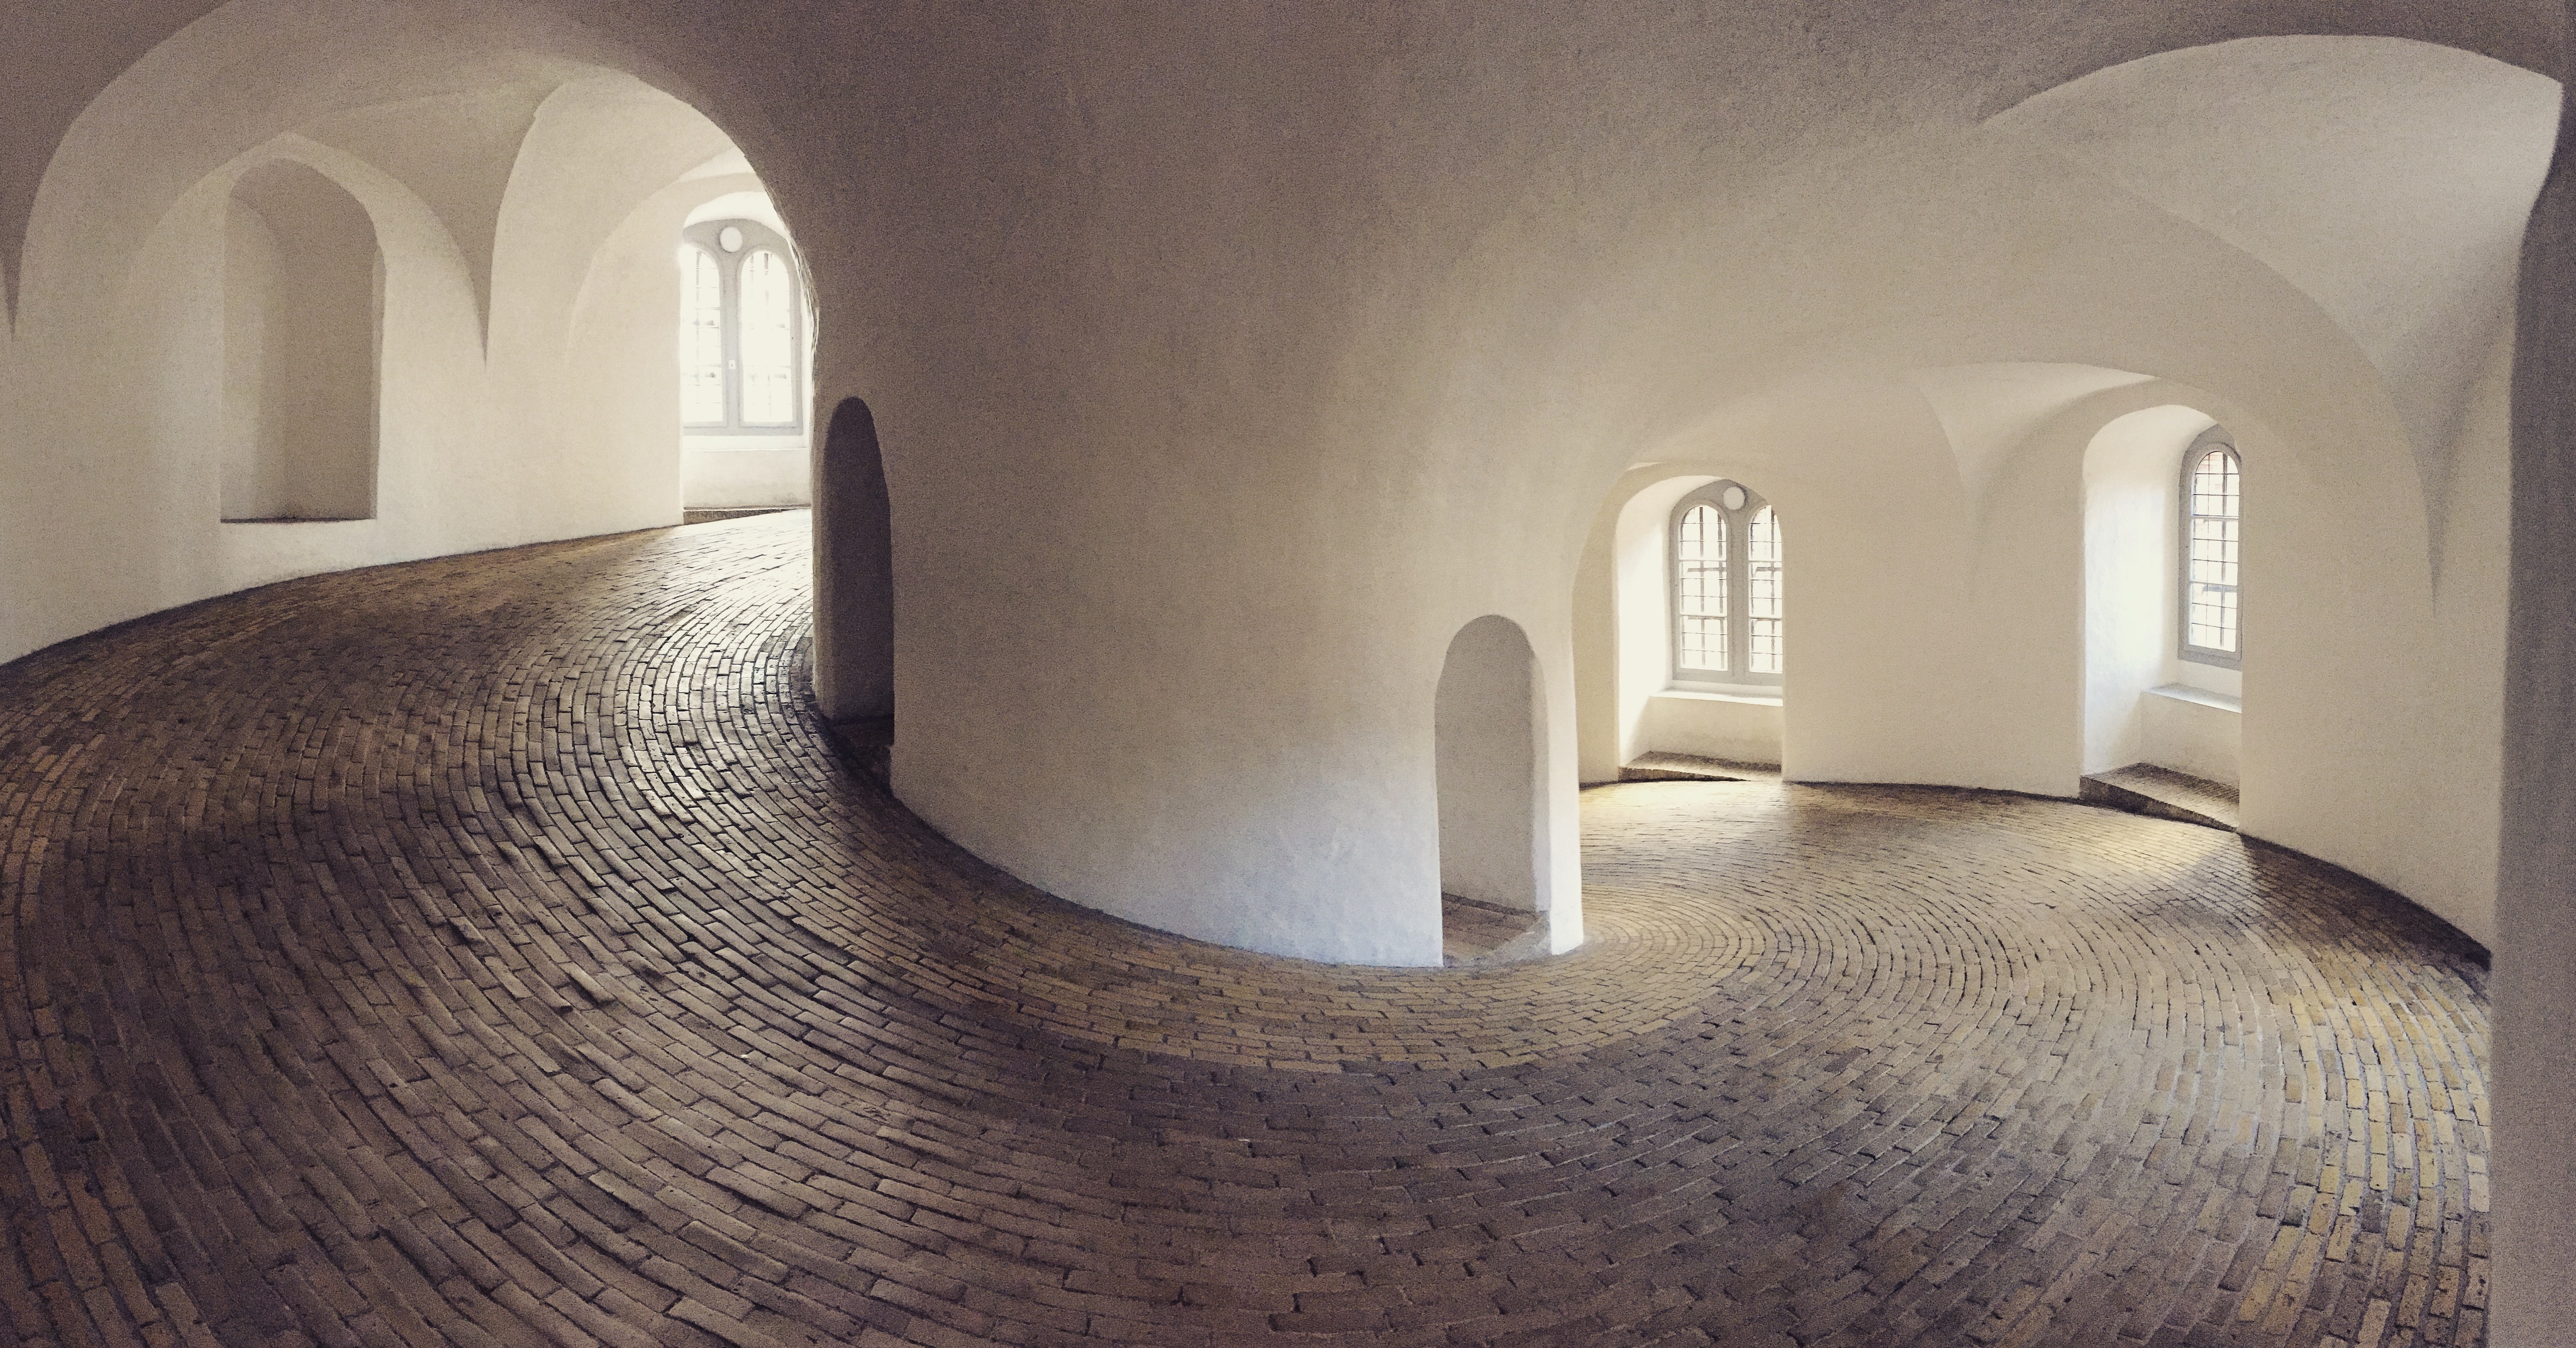 An inside view of Rundetårn